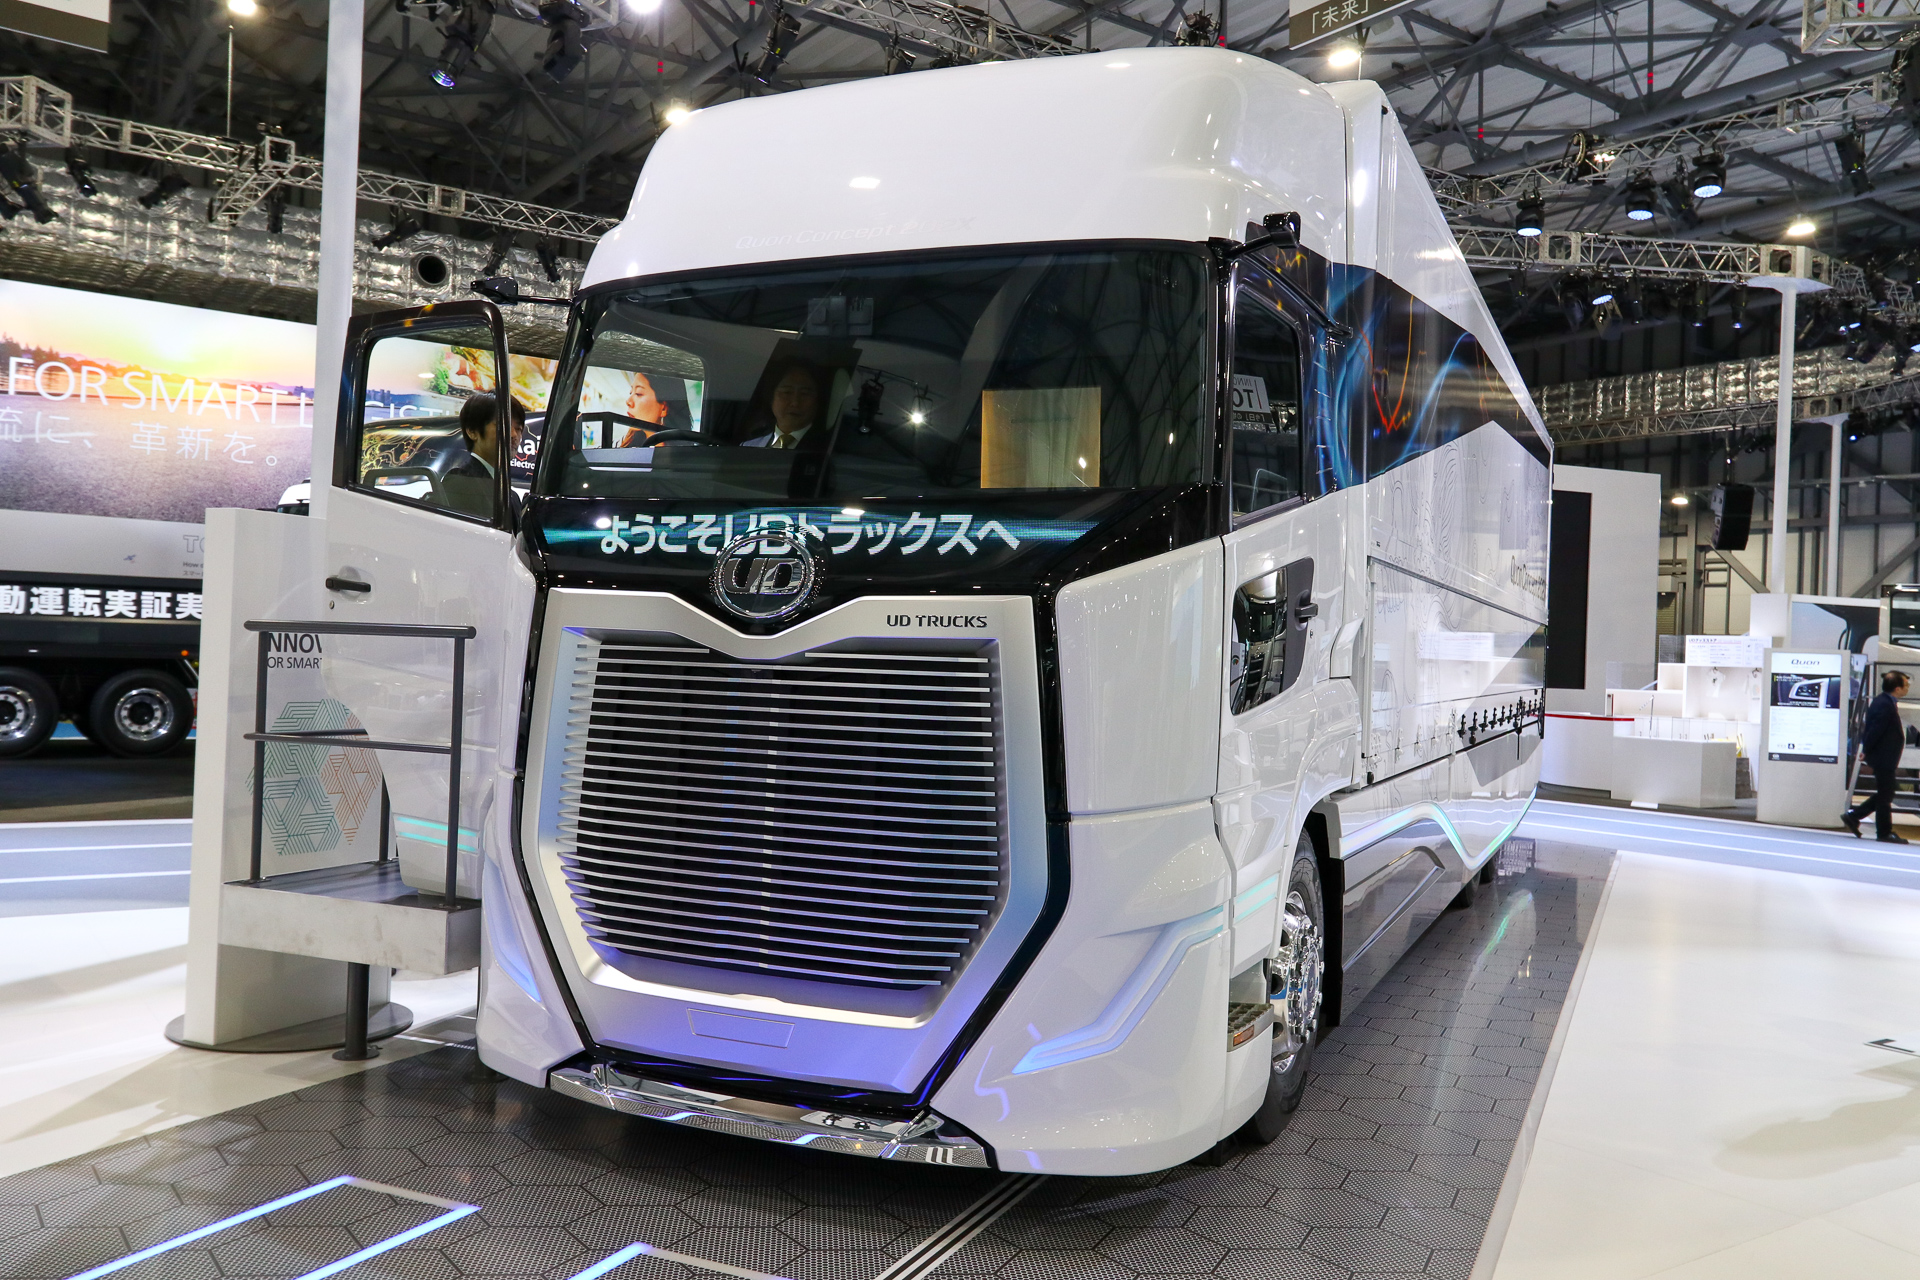 【東京モーターショー 2019】UDトラックス、202X年を想定したコンセプトトラック「Quon Concept 202X」を世界初公開